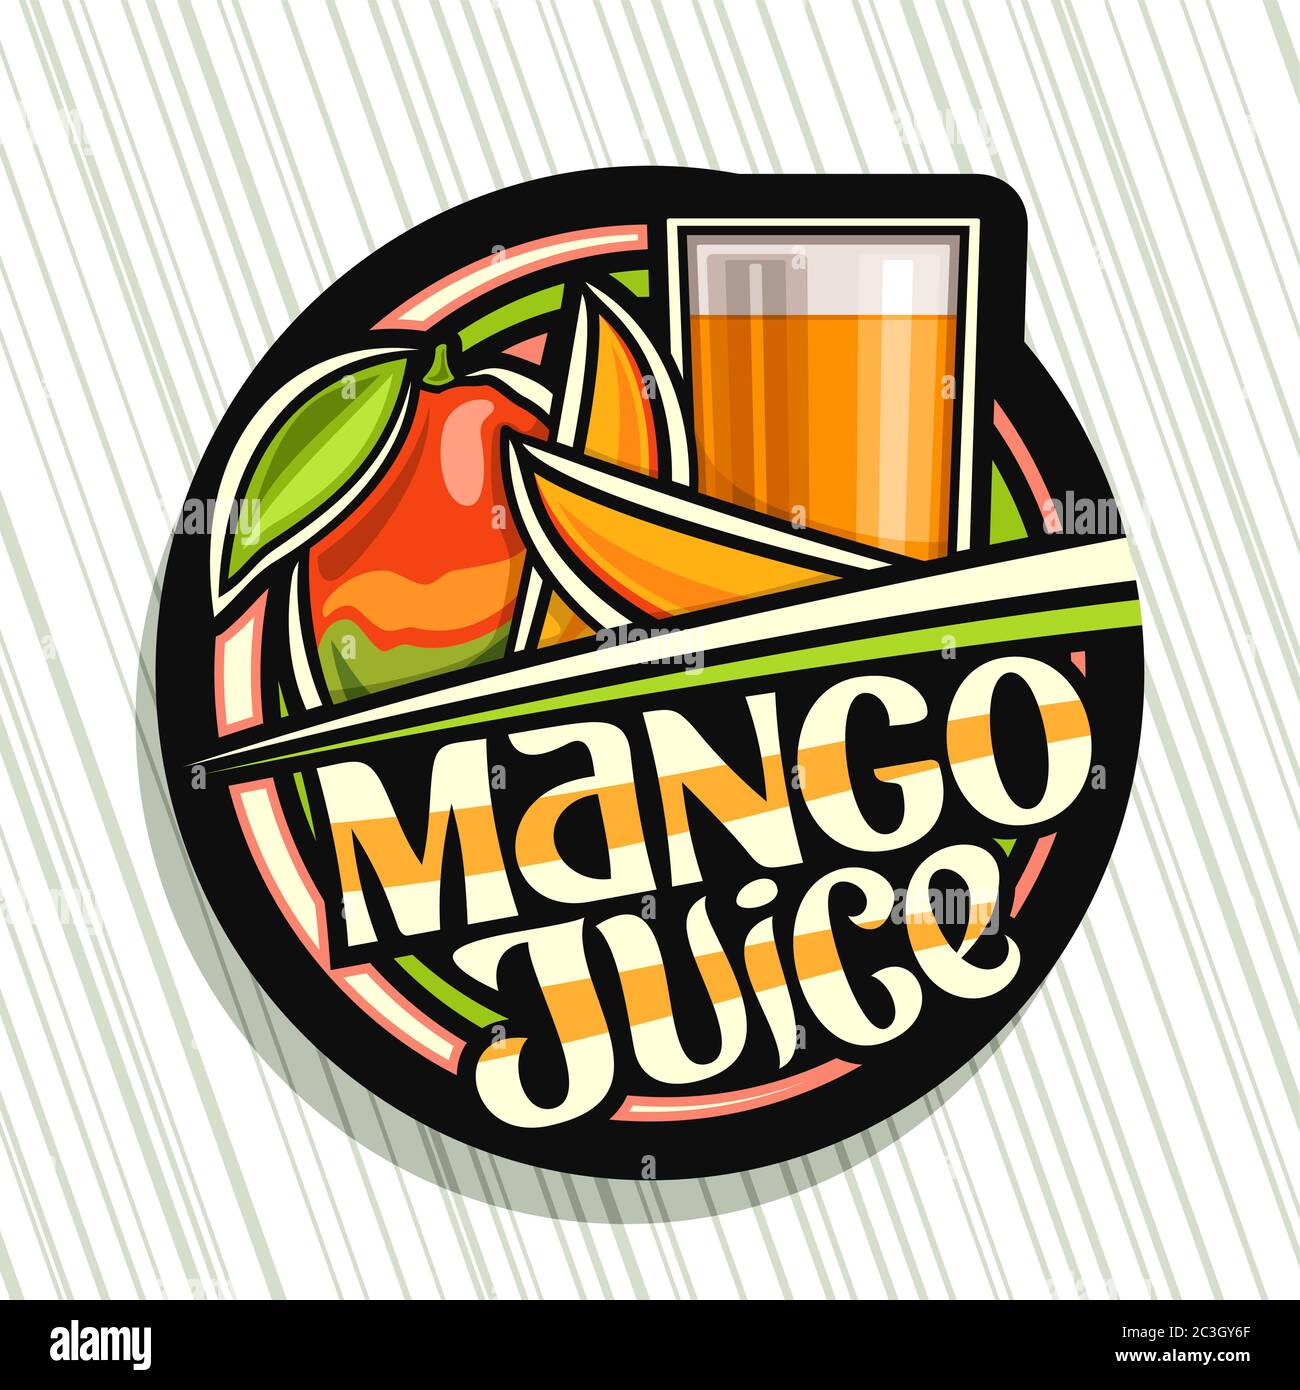 Vector logo para jugo de Mango, etiqueta decorativa oscura con ilustración  de bebida de fruta en vidrio alto y 3 mangos de dibujos animados, concepto  de fruta con un único let Imagen